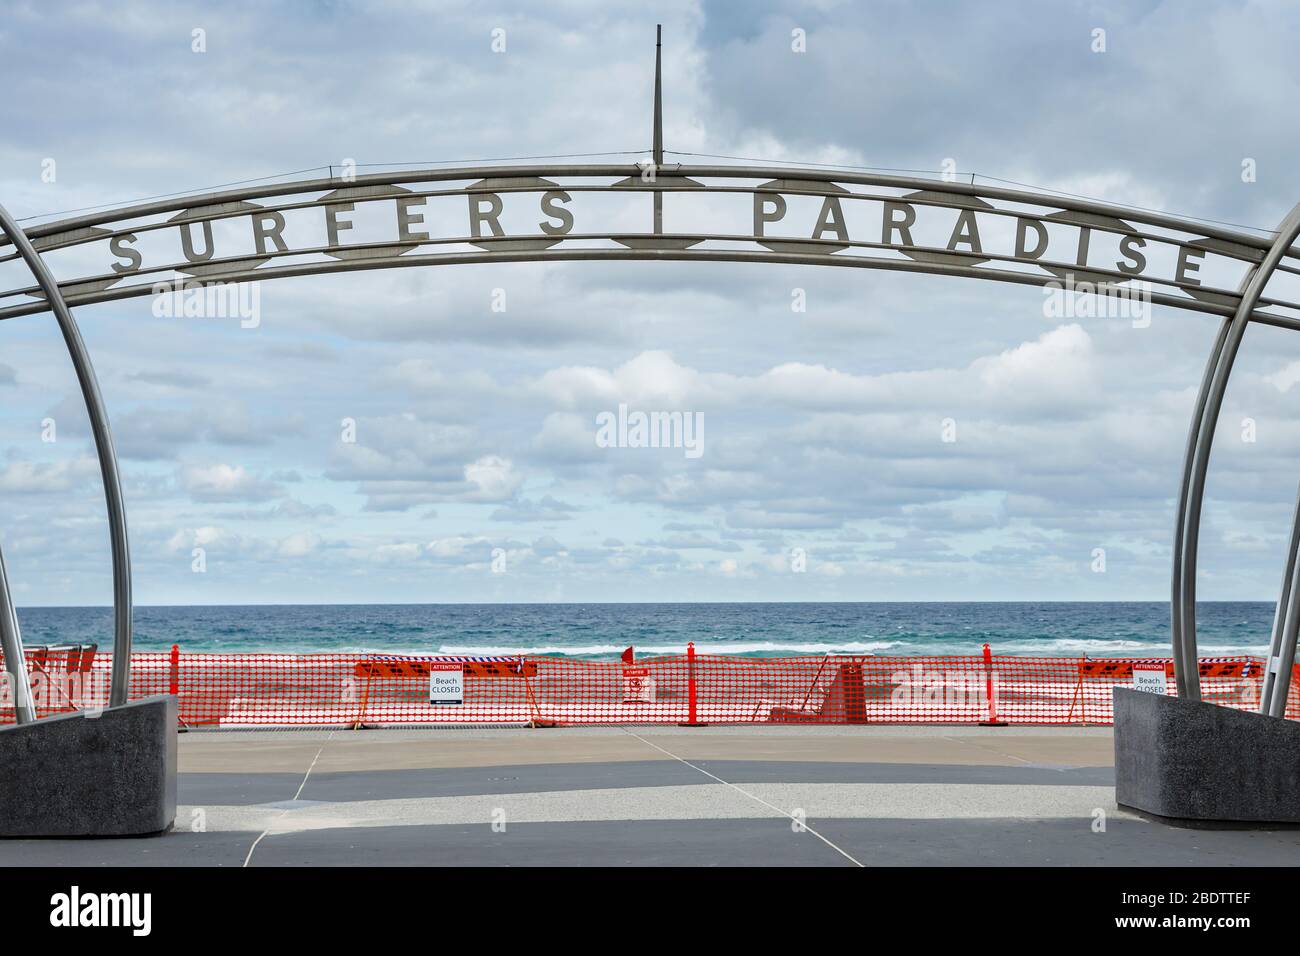 Surfers Paradise beach cerrado covid-19, playa cerrada o concepto de cierre en medio de bloqueo coronavirus. La pandemia del virus ncov fuerza el cierre de un hito emblemático Foto de stock